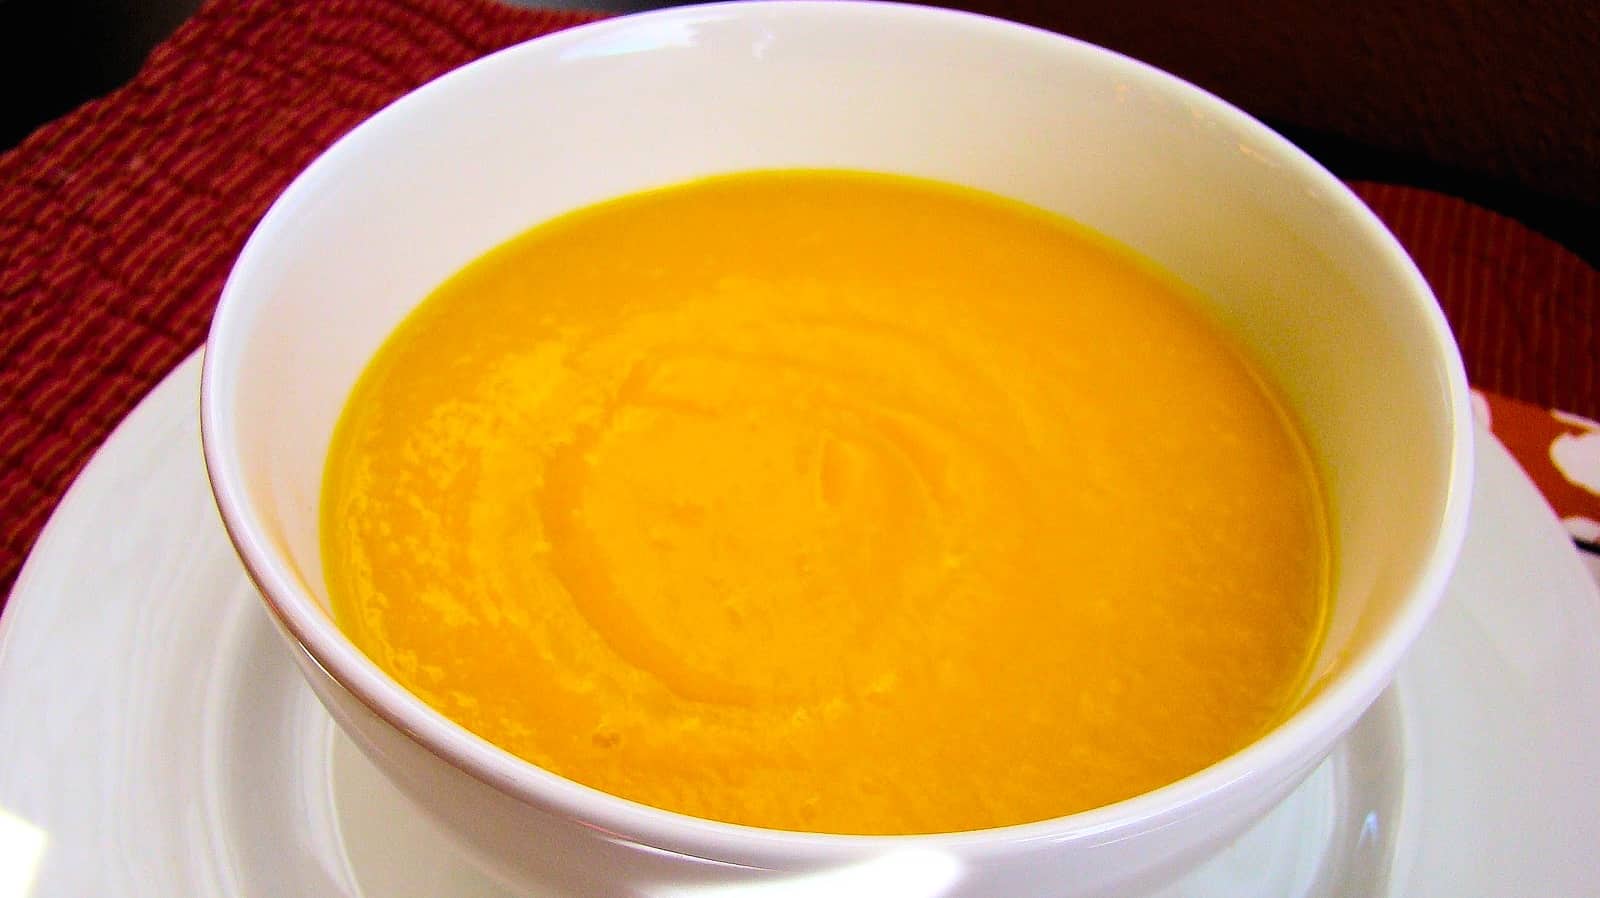 Receta: cómo preparar sopa de calabaza (VIDEO)